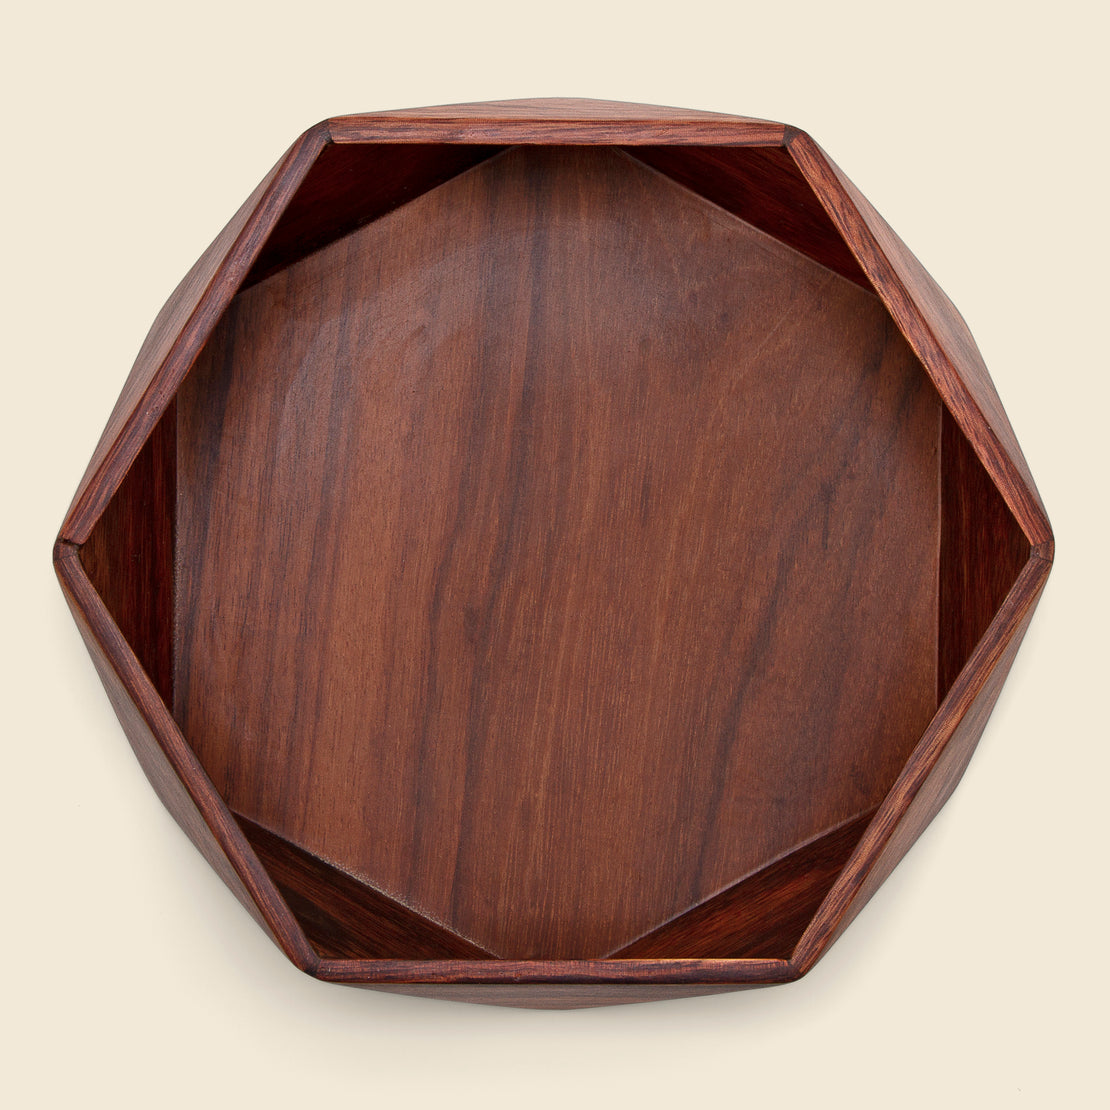 Granadillo Wooden Bowl - Home - STAG Provisions - Home - Art & Accessories - Vessel